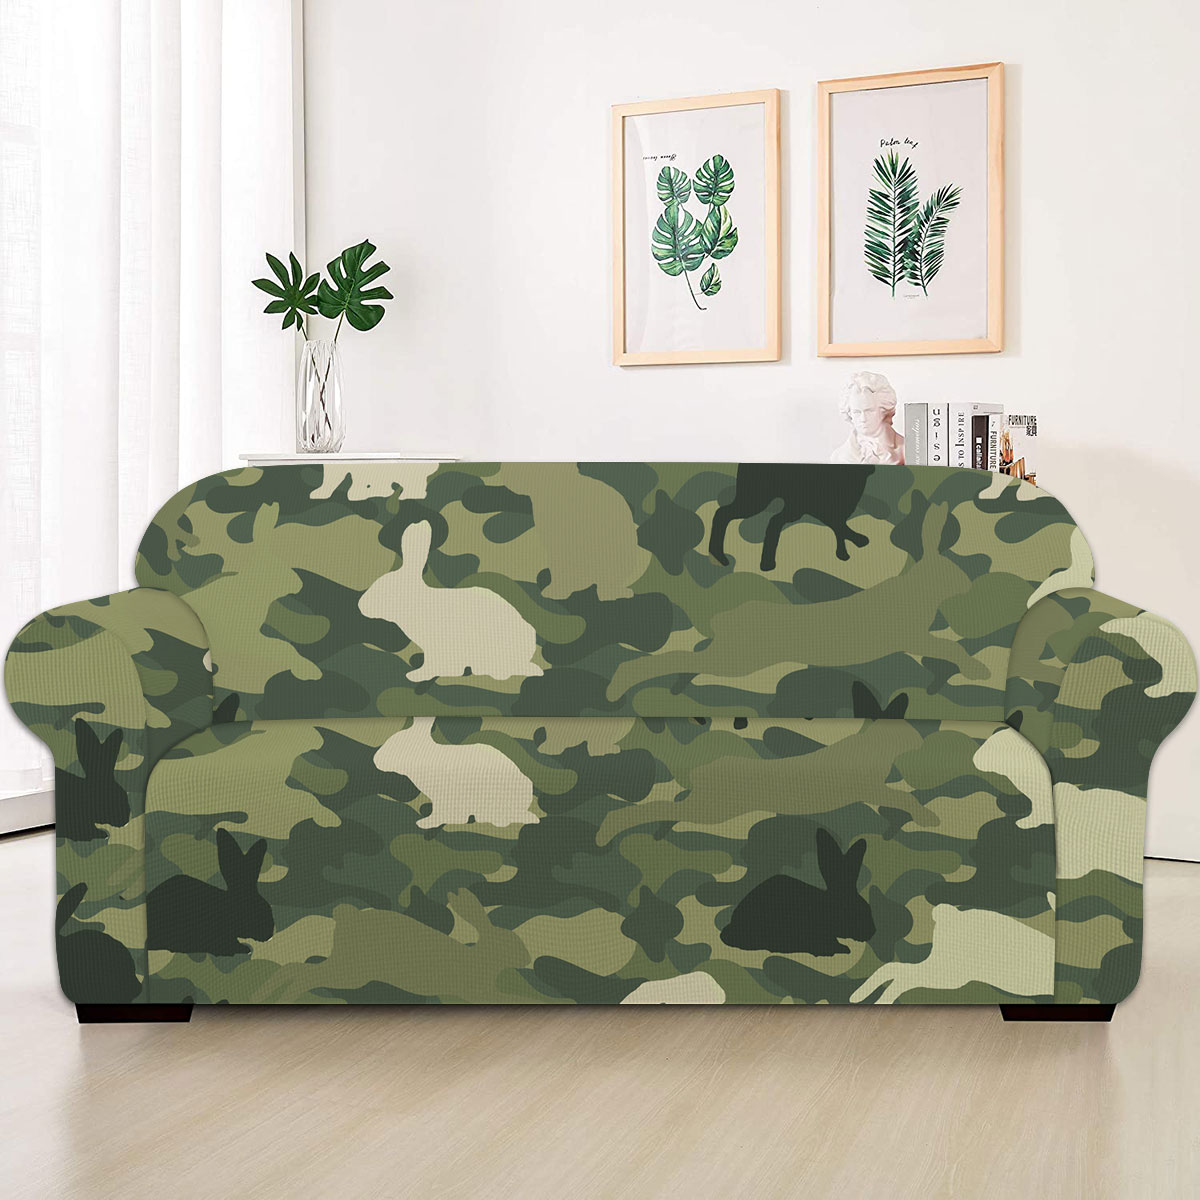 Rabbit Camo Pattern Sofa Cover